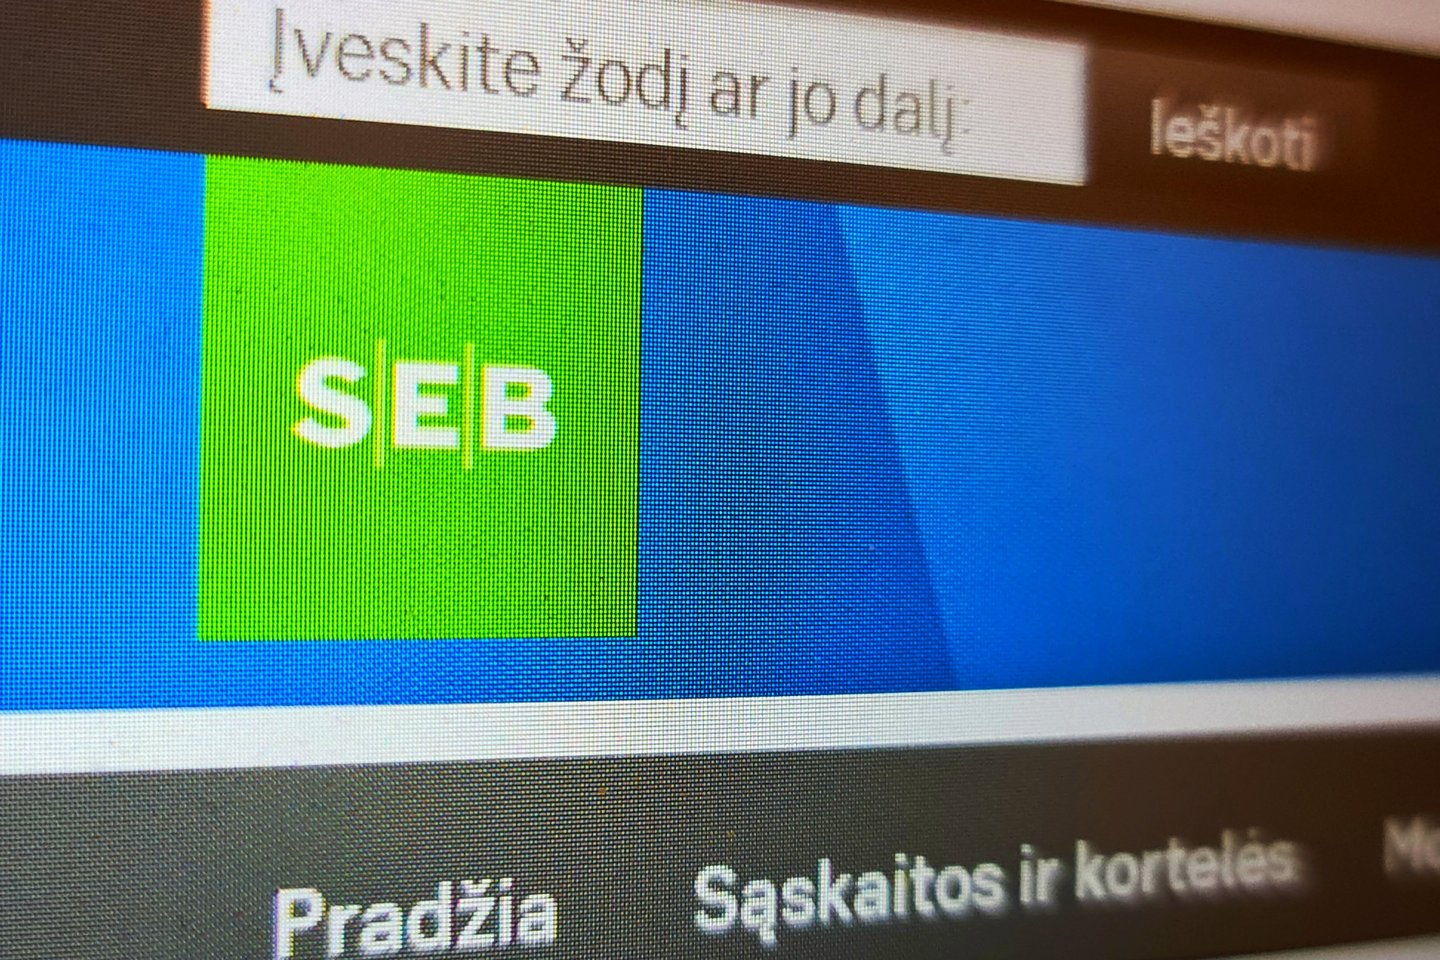  SEB bankas visose Baltijos šalyse klientams pristatė atnaujintą, labiau klientų poreikiams pritaikytą ir lengviau naršomą interneto svetainę.<br> Lrytas.lt nuotr.